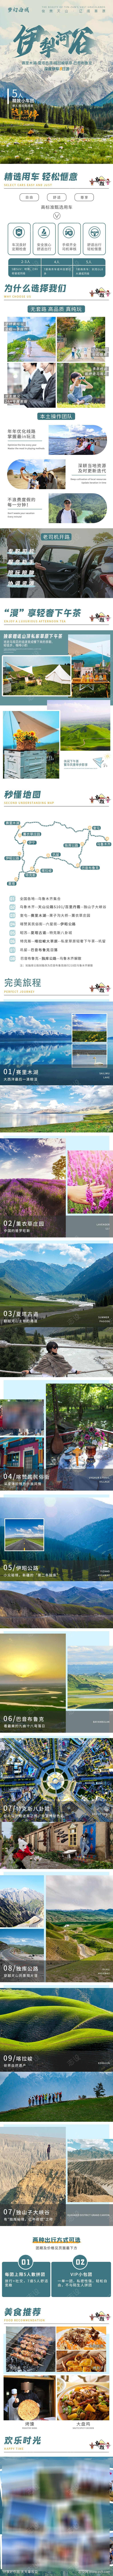 新疆旅游畅玩